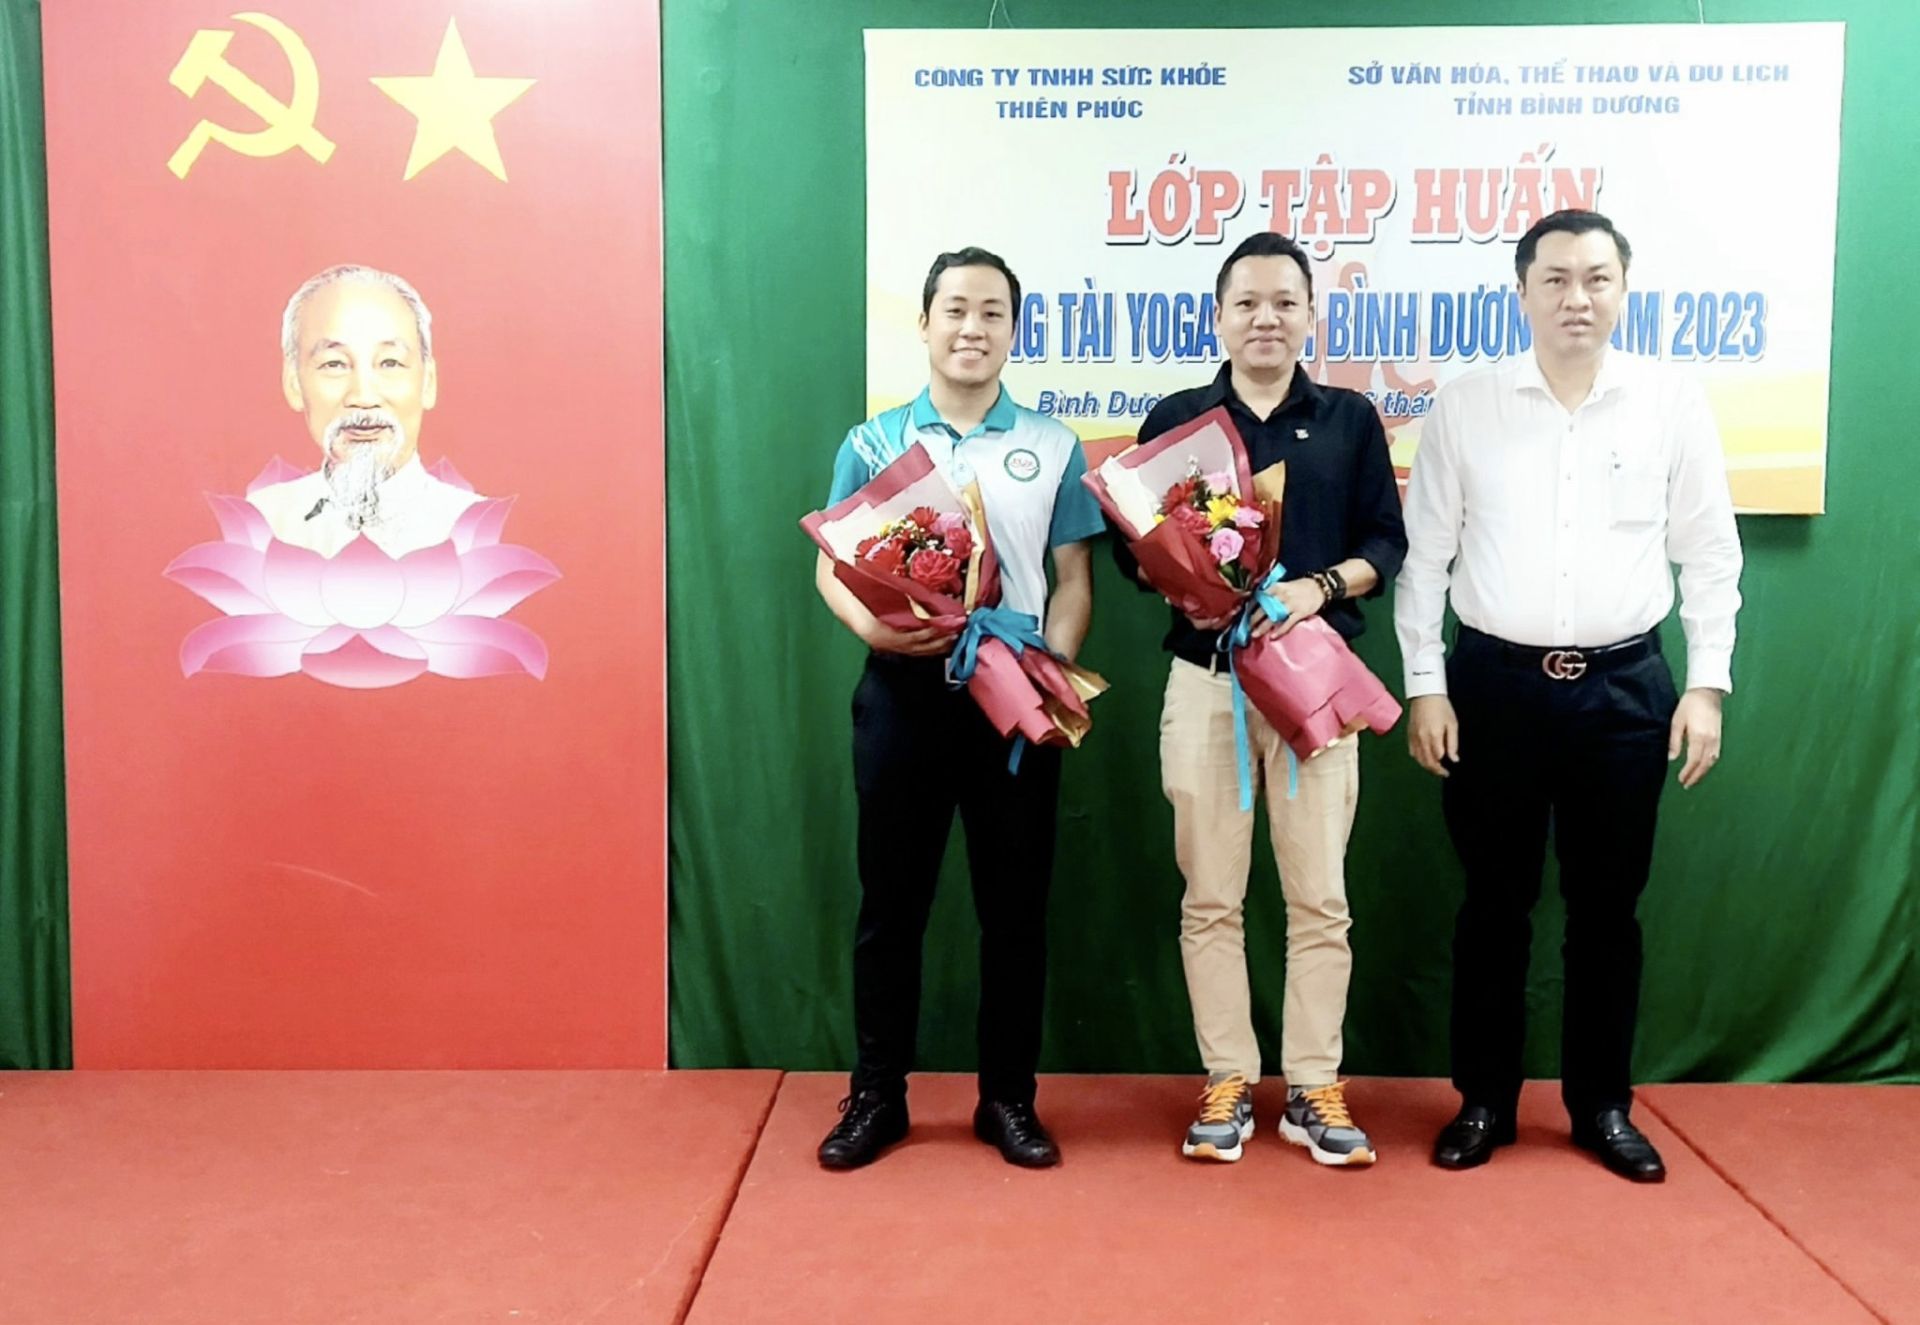 Ông Cao Văn Chóng – PGĐ Sở Văn hóa, Thể thao và Du lịch tỉnh Bình Dương tặng hoa và chụp hình lưu niệm cùng các giảng viên đến từ Liên đoàn Yoga Việt Nam